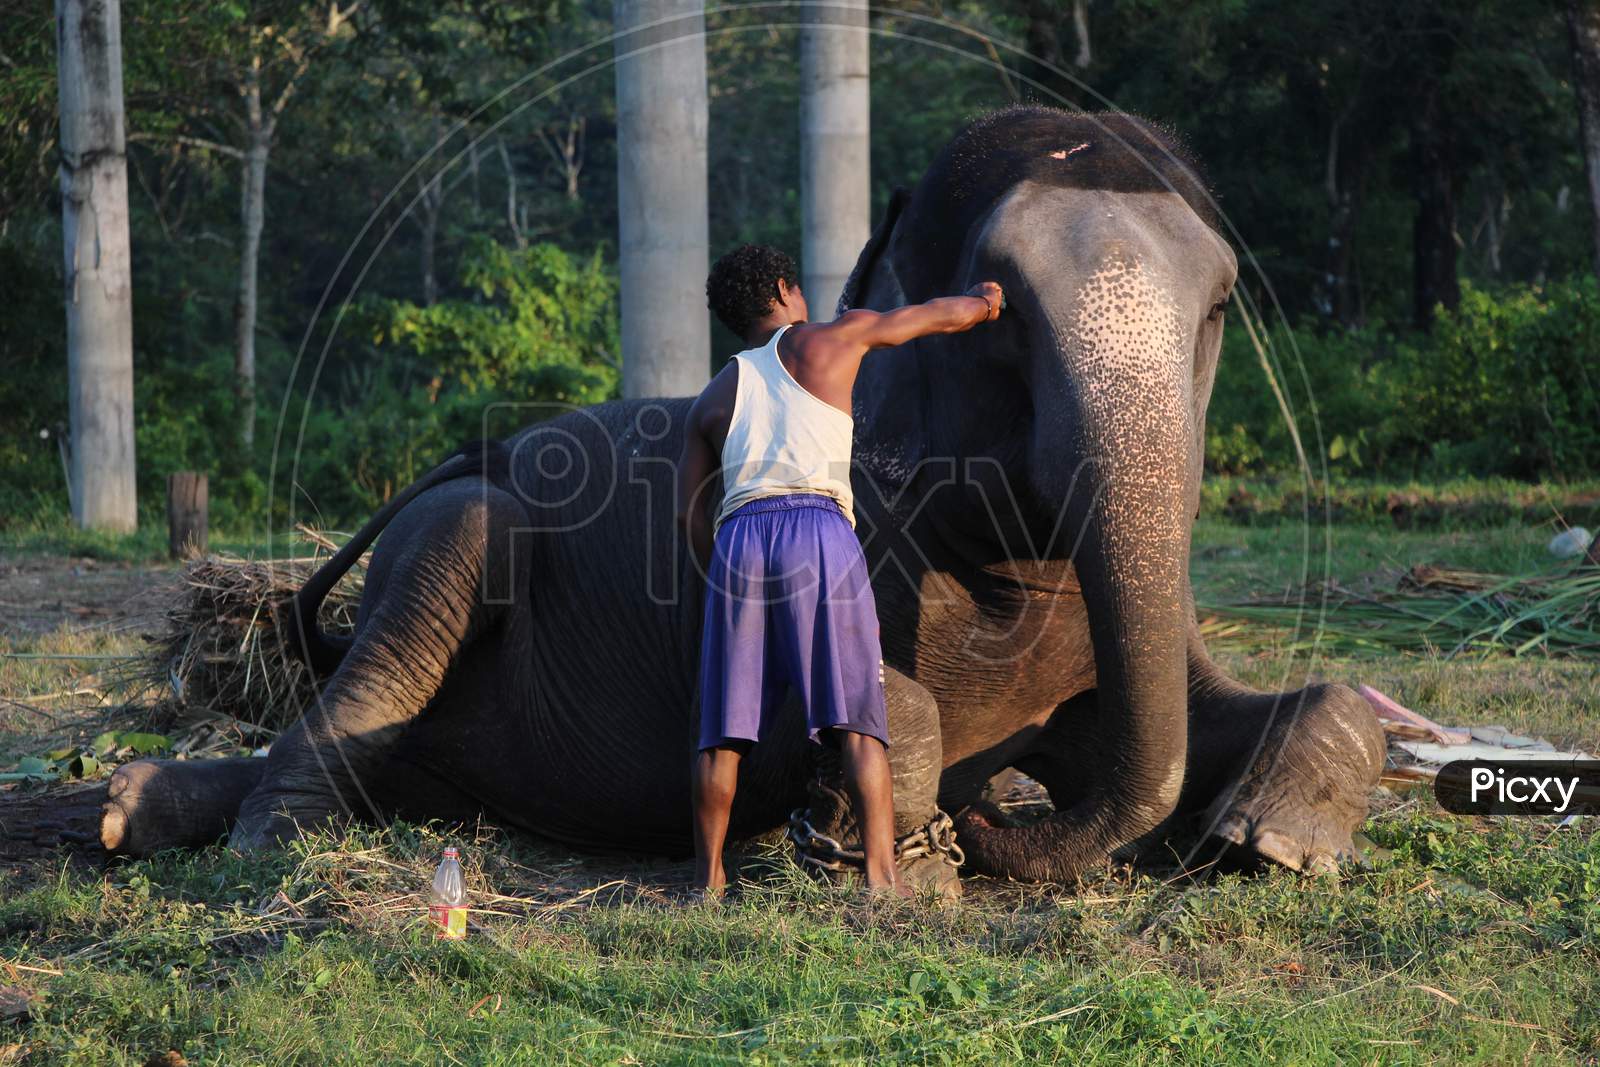 A Local Man with an Elephant